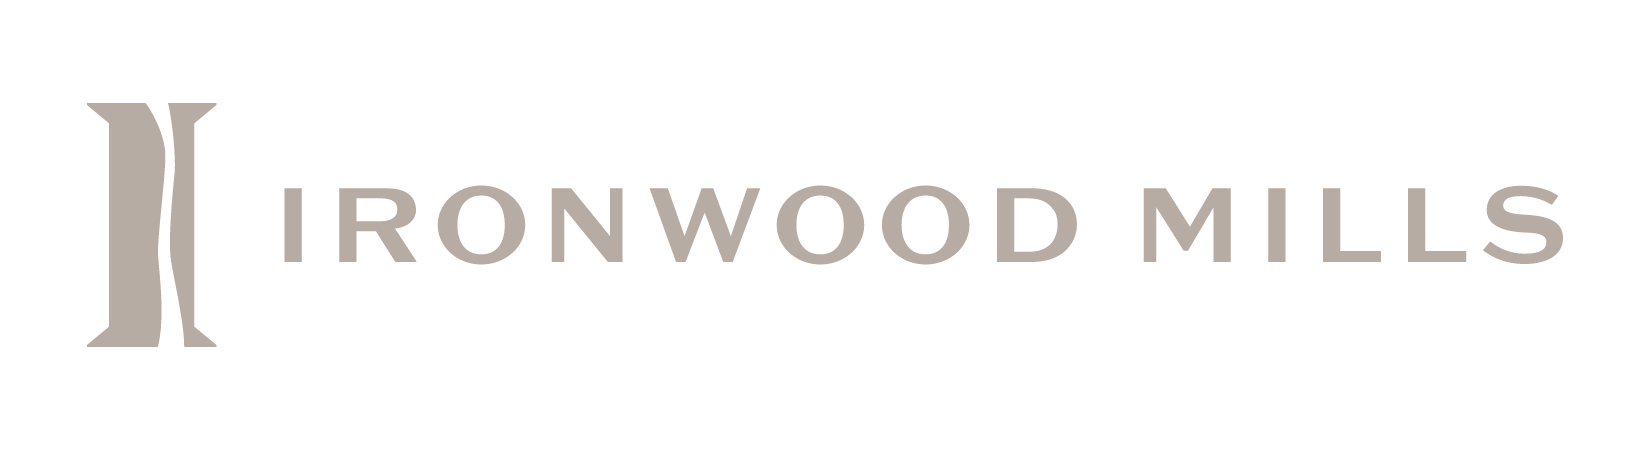 Ironwood Mills Primary Logo - Ironwood